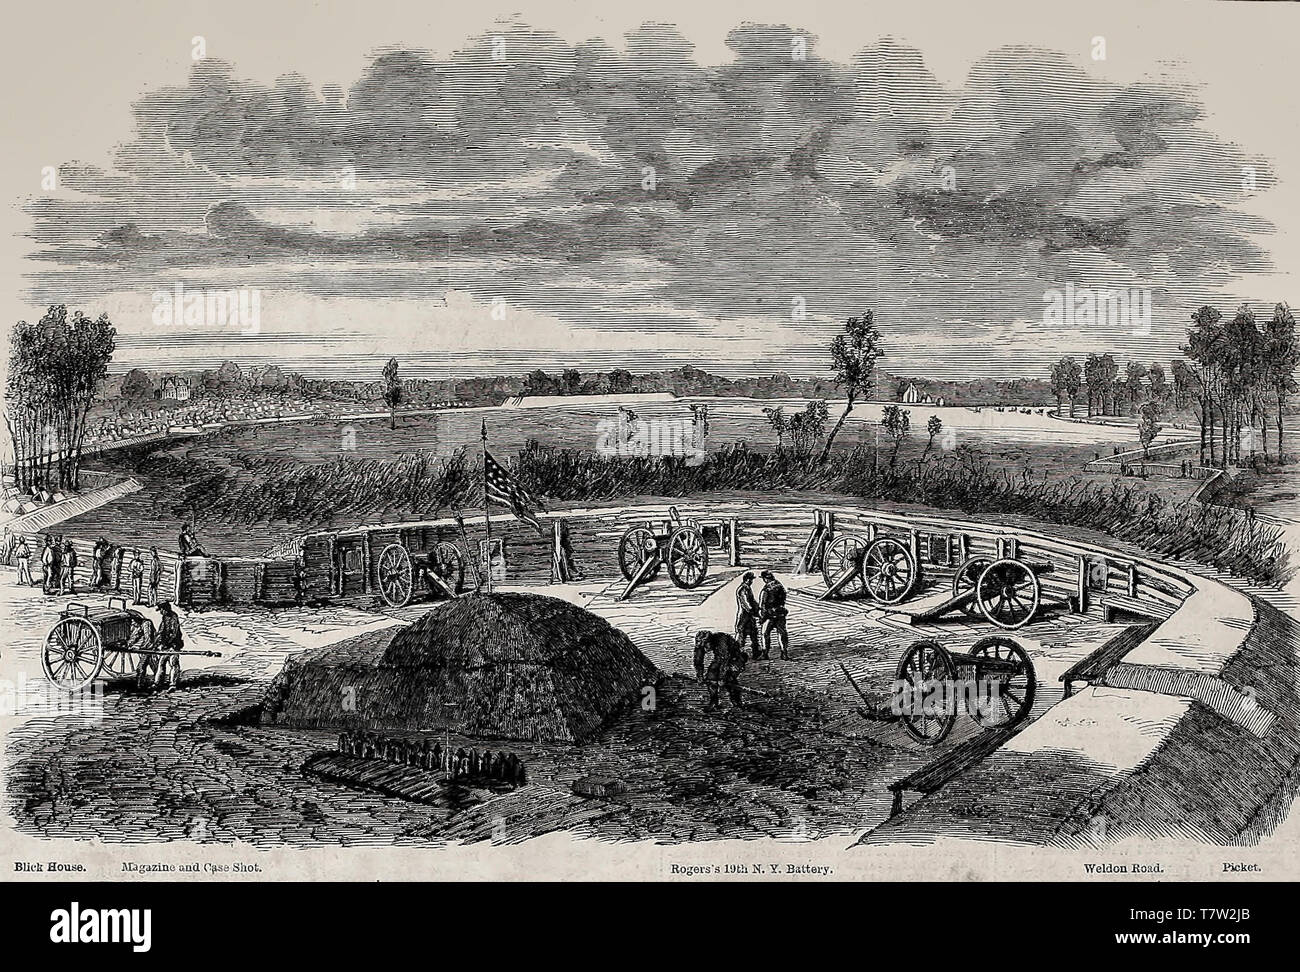 L'Assedio di Petersburg - Vista di concedere la posizione di Weldon Railroad, dal centro della linea guardando a sinistra - La Guerra civile americana, 1864 Foto Stock